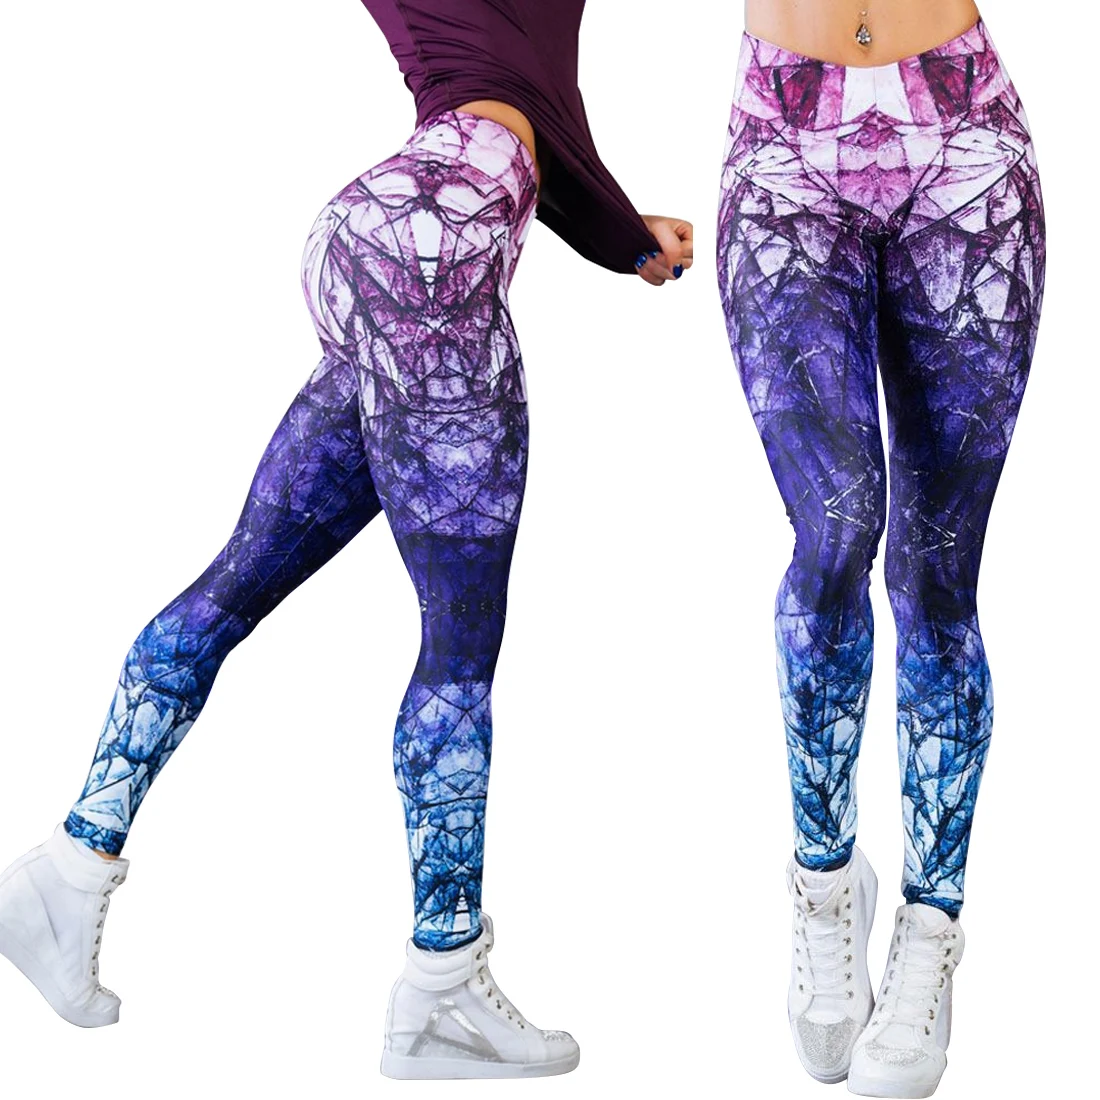 2019 г. пикантные штаны с высокой талией для женщин спортивные штаны Горячая печатных Спорт фитнес Штаны тренировочные брюки